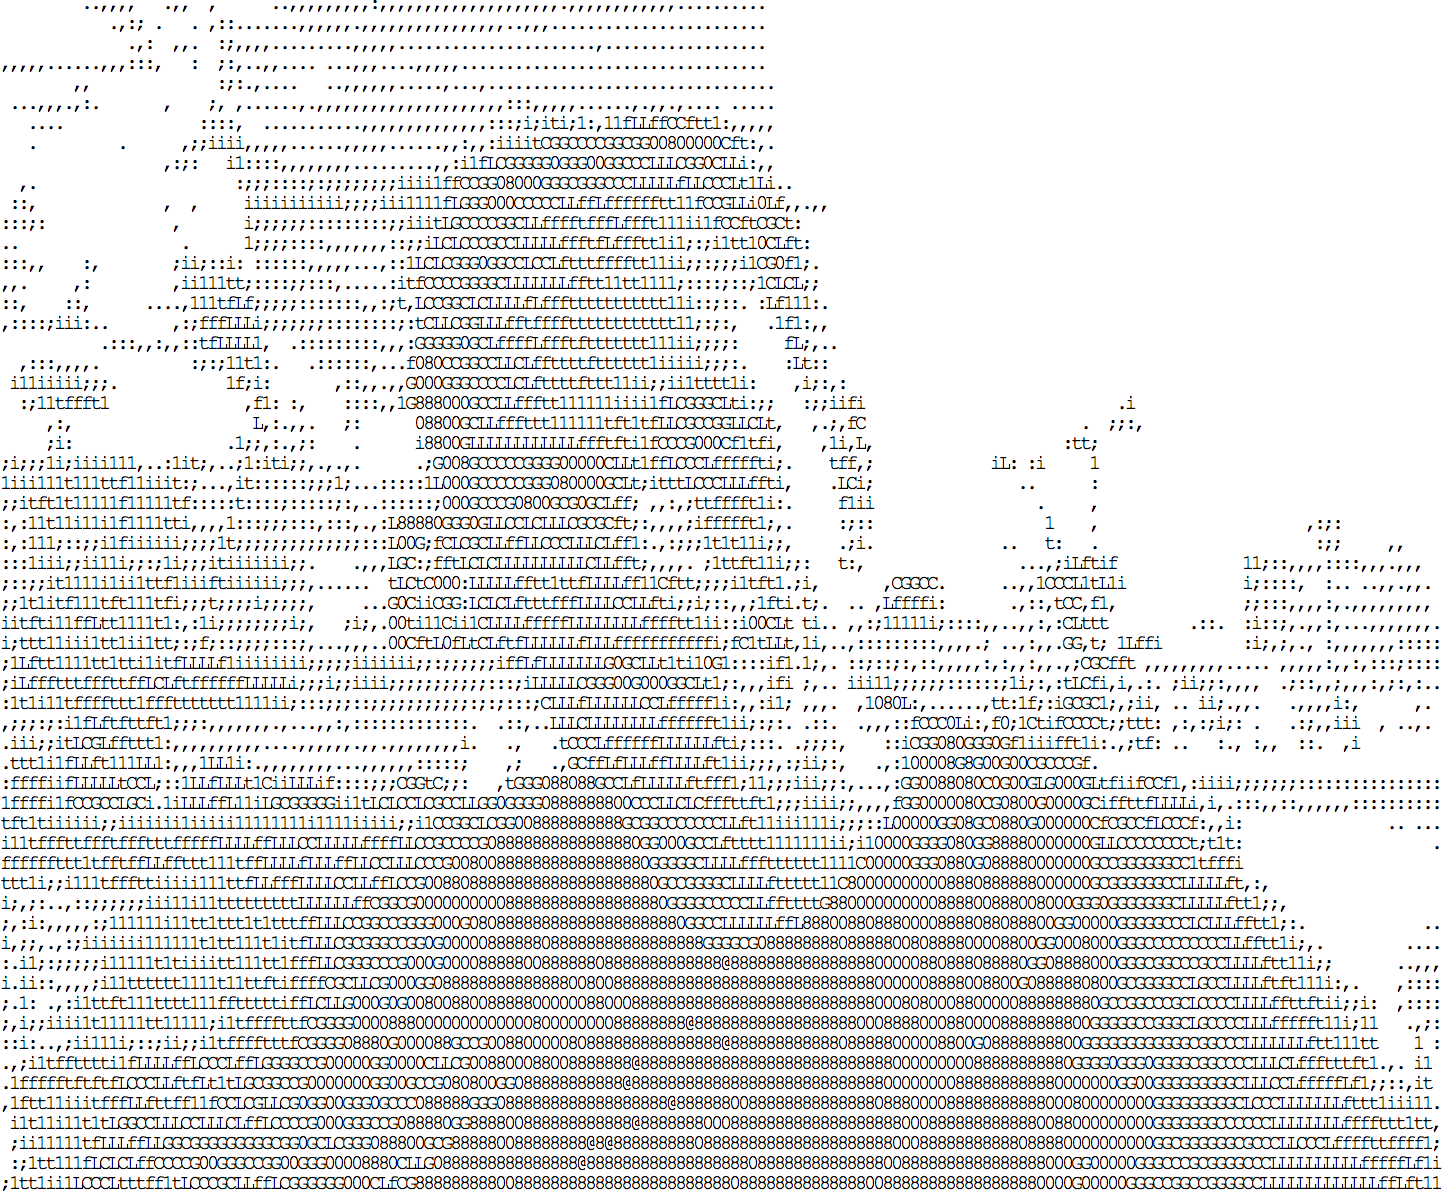 Von idevelop.ro/ascii-camera generierte ASCII-Bild